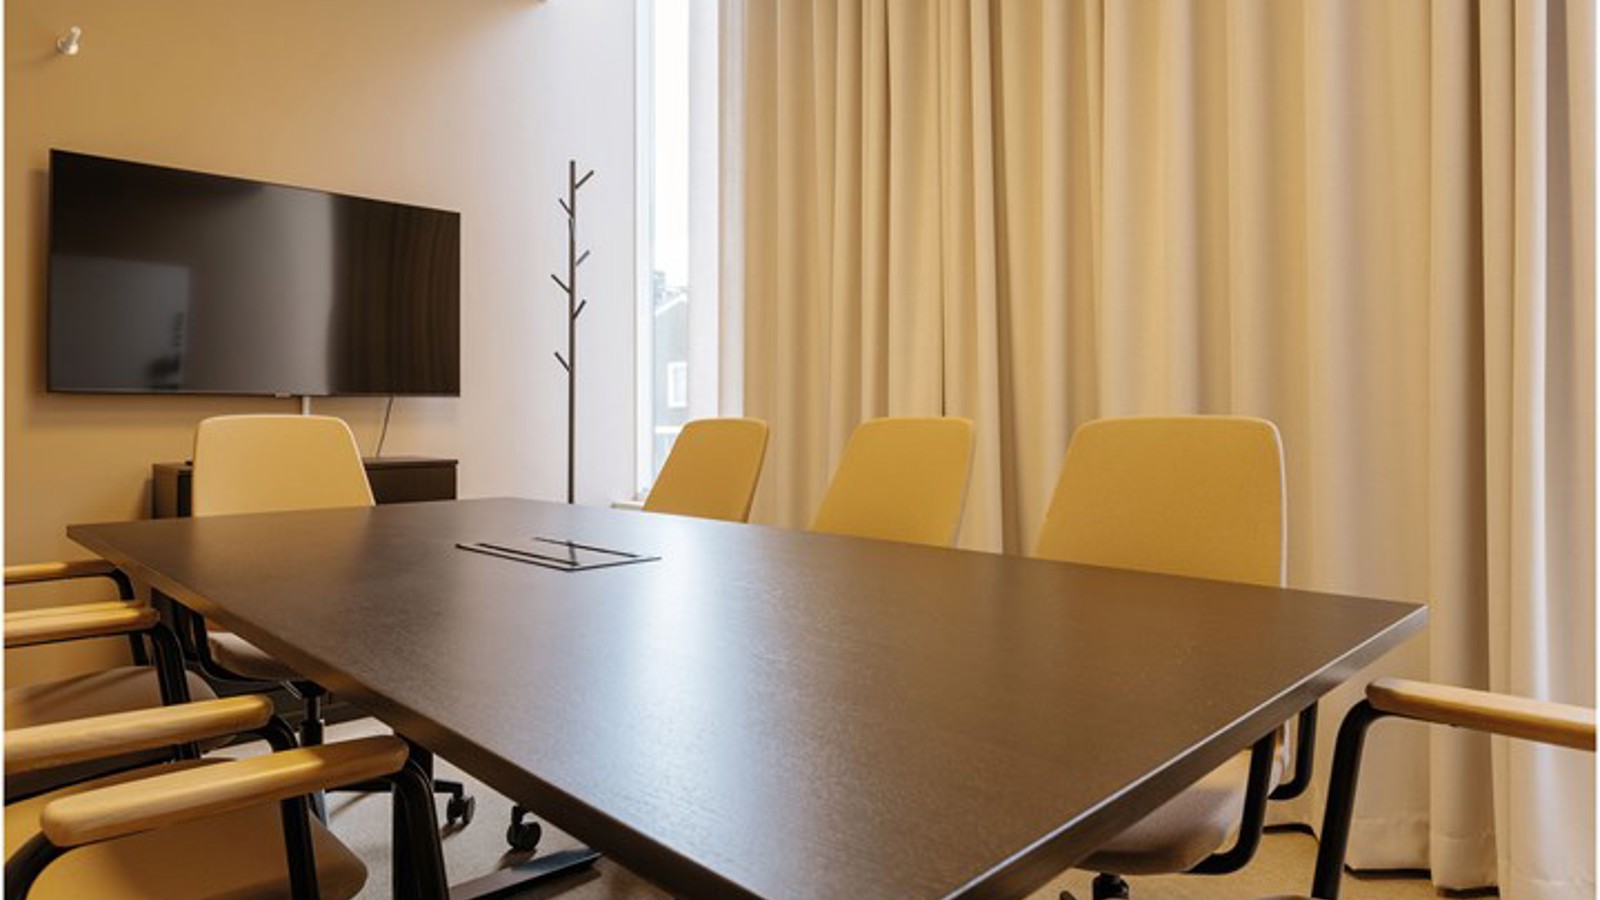 Konferensrum med styrelsesittning i gula färgtoner och brunt bord